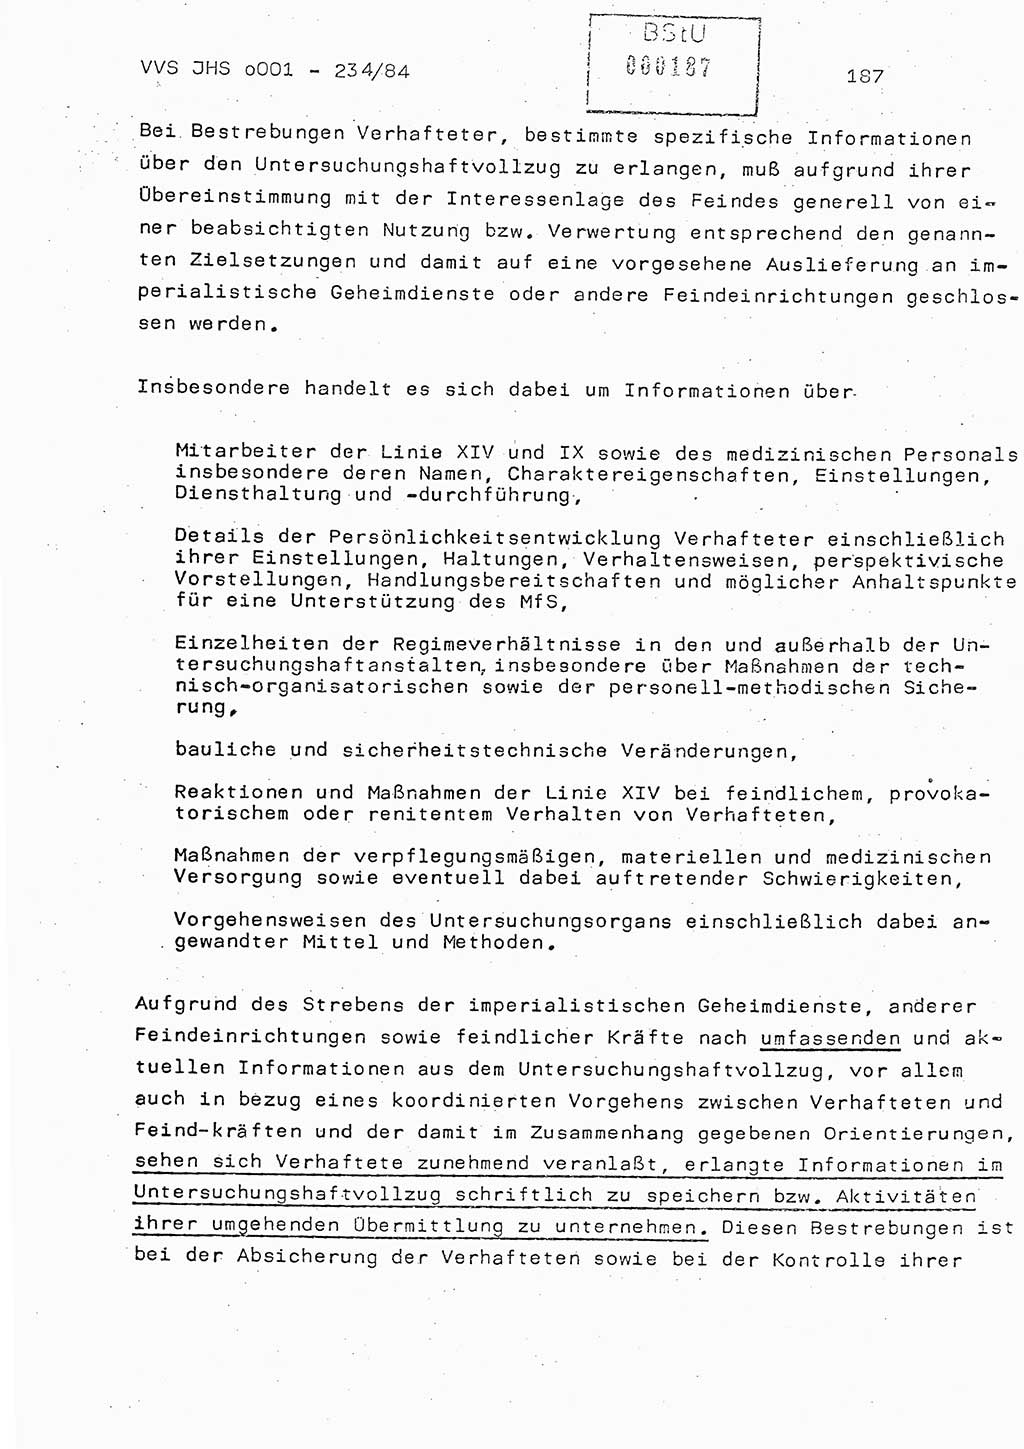 Dissertation Oberst Siegfried Rataizick (Abt. ⅩⅣ), Oberstleutnant Volkmar Heinz (Abt. ⅩⅣ), Oberstleutnant Werner Stein (HA Ⅸ), Hauptmann Heinz Conrad (JHS), Ministerium für Staatssicherheit (MfS) [Deutsche Demokratische Republik (DDR)], Juristische Hochschule (JHS), Vertrauliche Verschlußsache (VVS) o001-234/84, Potsdam 1984, Seite 187 (Diss. MfS DDR JHS VVS o001-234/84 1984, S. 187)